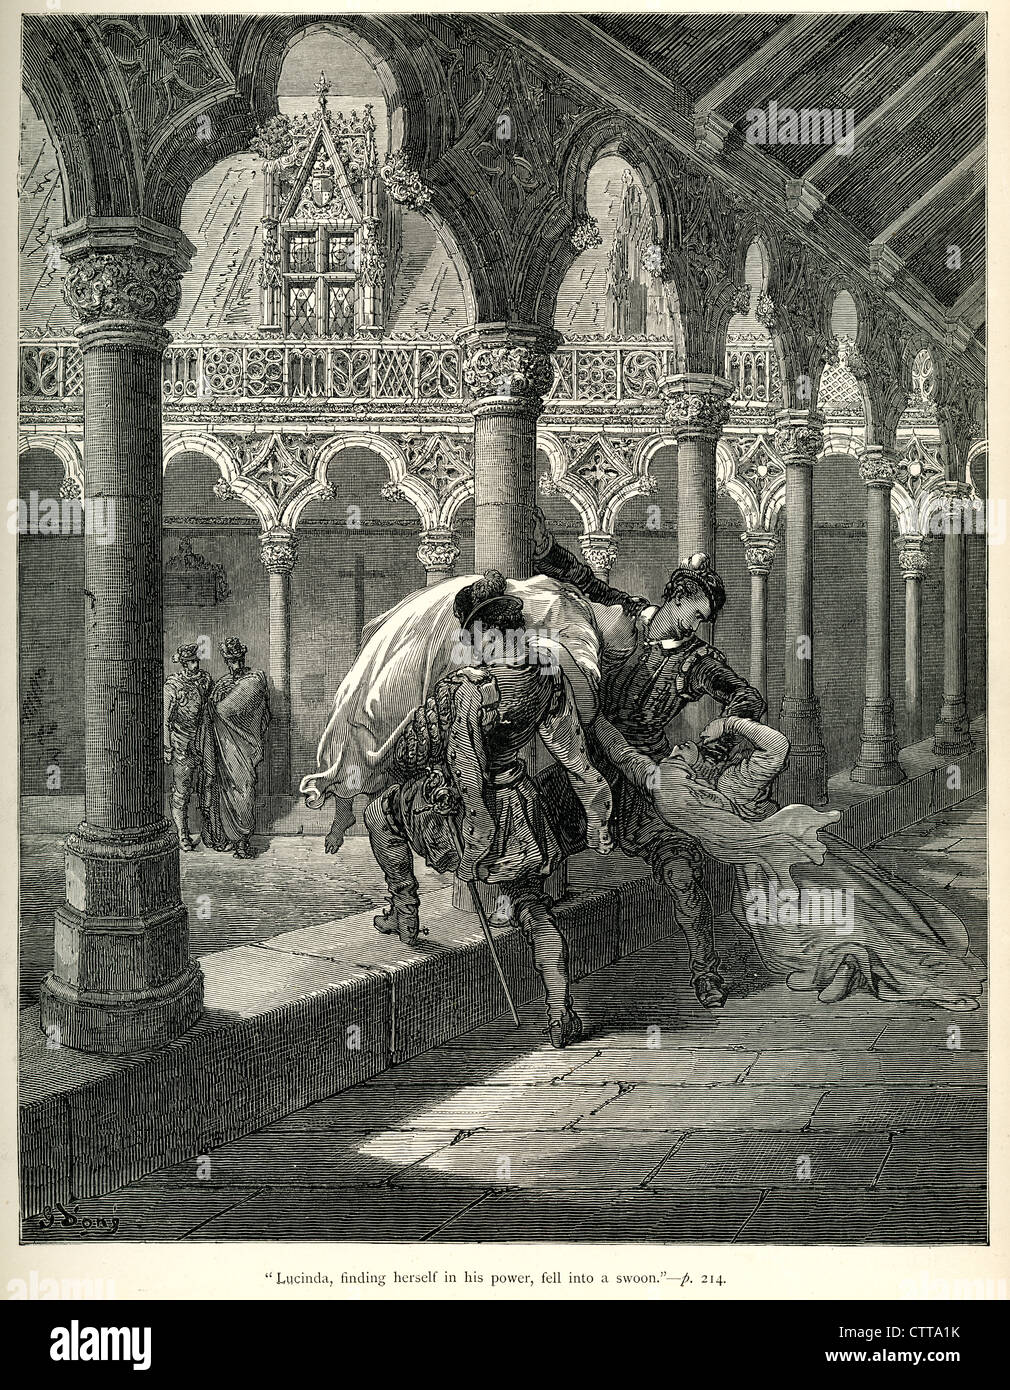 Lucinda trovandosi in suo potere cadde in un swoon. Illustrazione di Gustave Dore da Don Chisciotte. Foto Stock